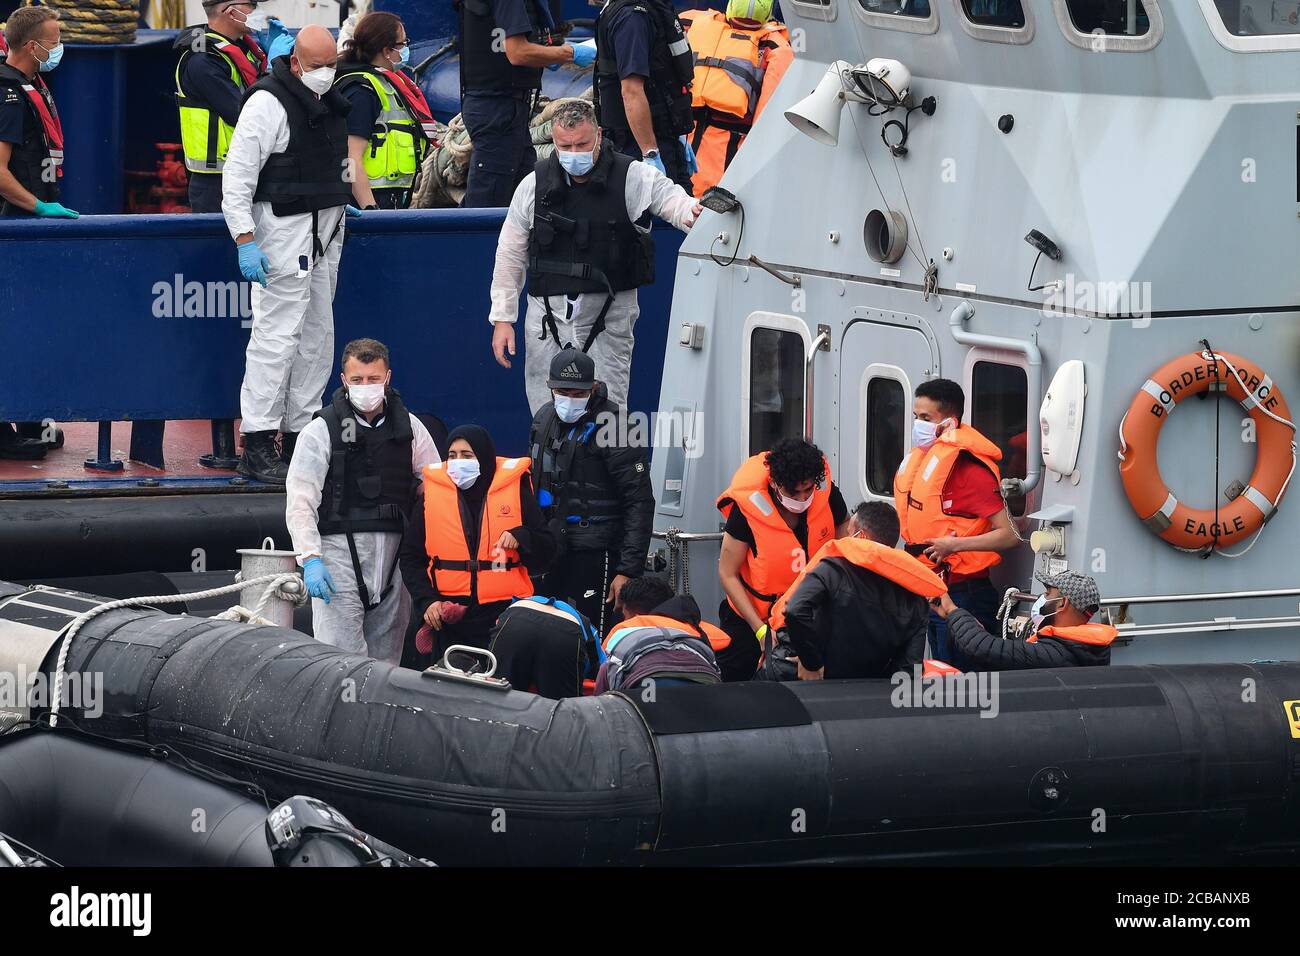 Eine Gruppe von Menschen, die als Migranten gedacht werden, werden von Grenzschutzbeamten nach Dover, Kent, gebracht, nachdem einige kleine Bootsvorfälle im Kanal heute vorgekommen waren. Stockfoto